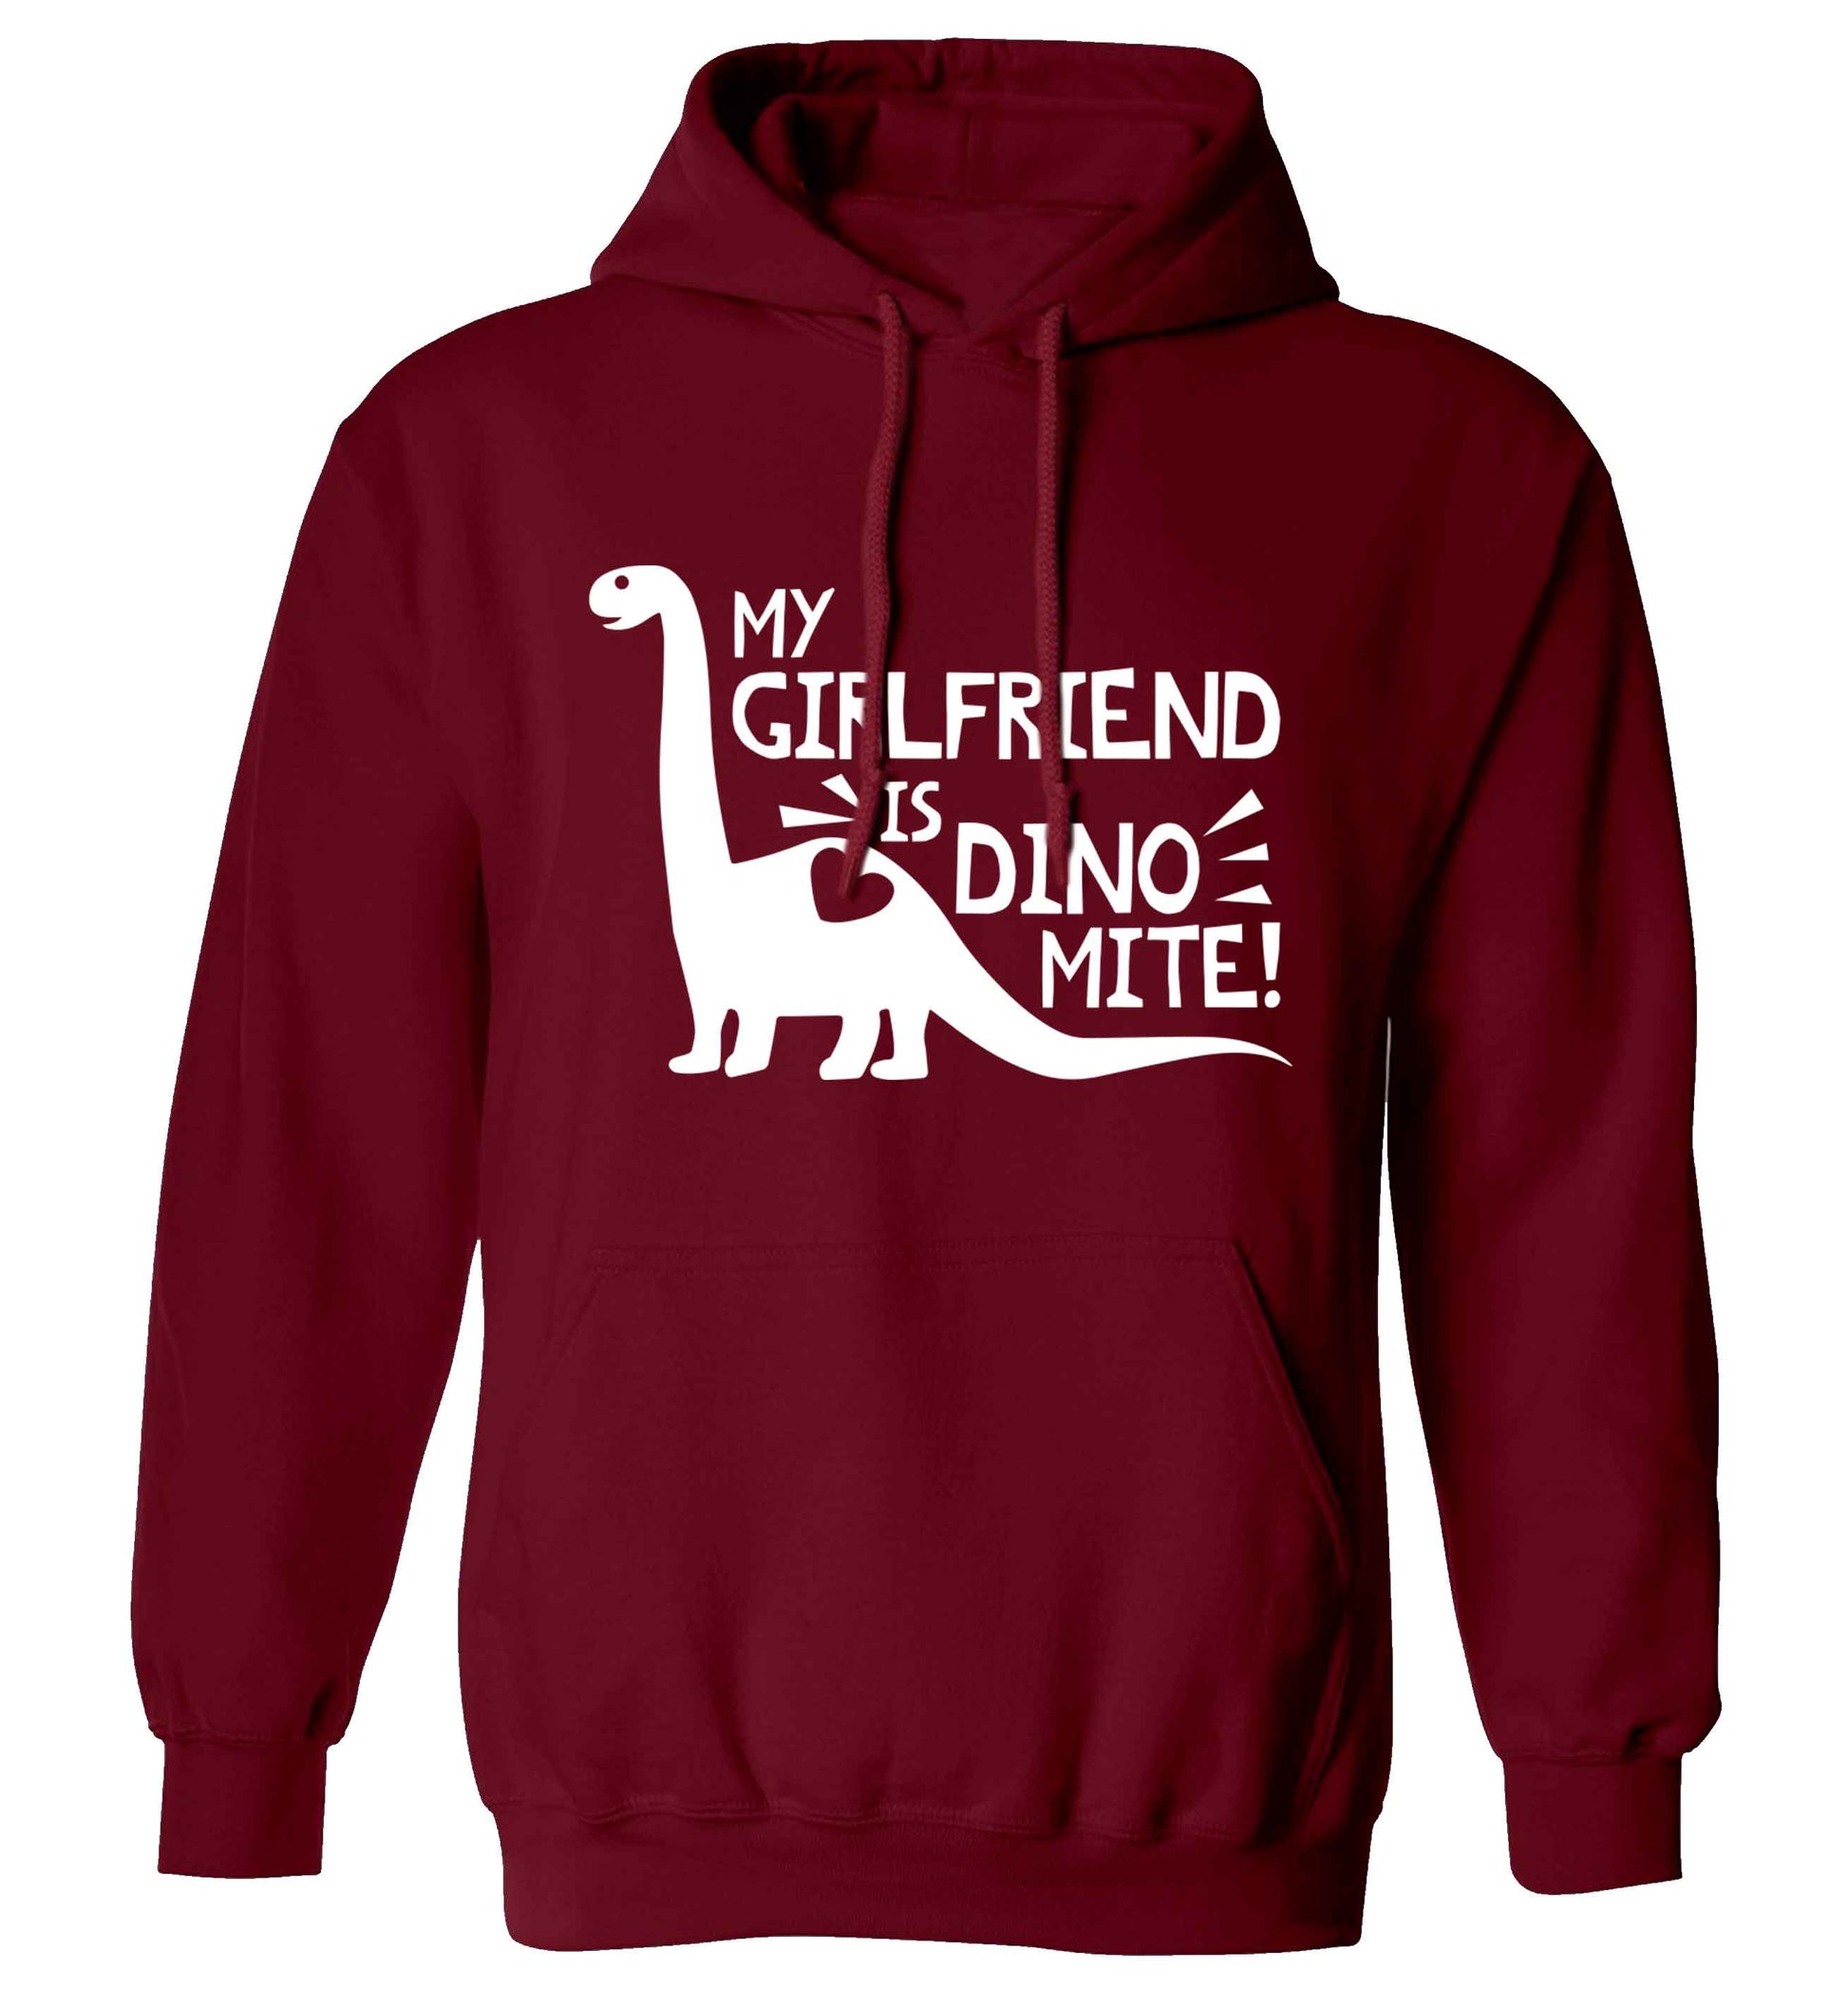 My girlfriend is dinomite! adults unisex maroon hoodie 2XL